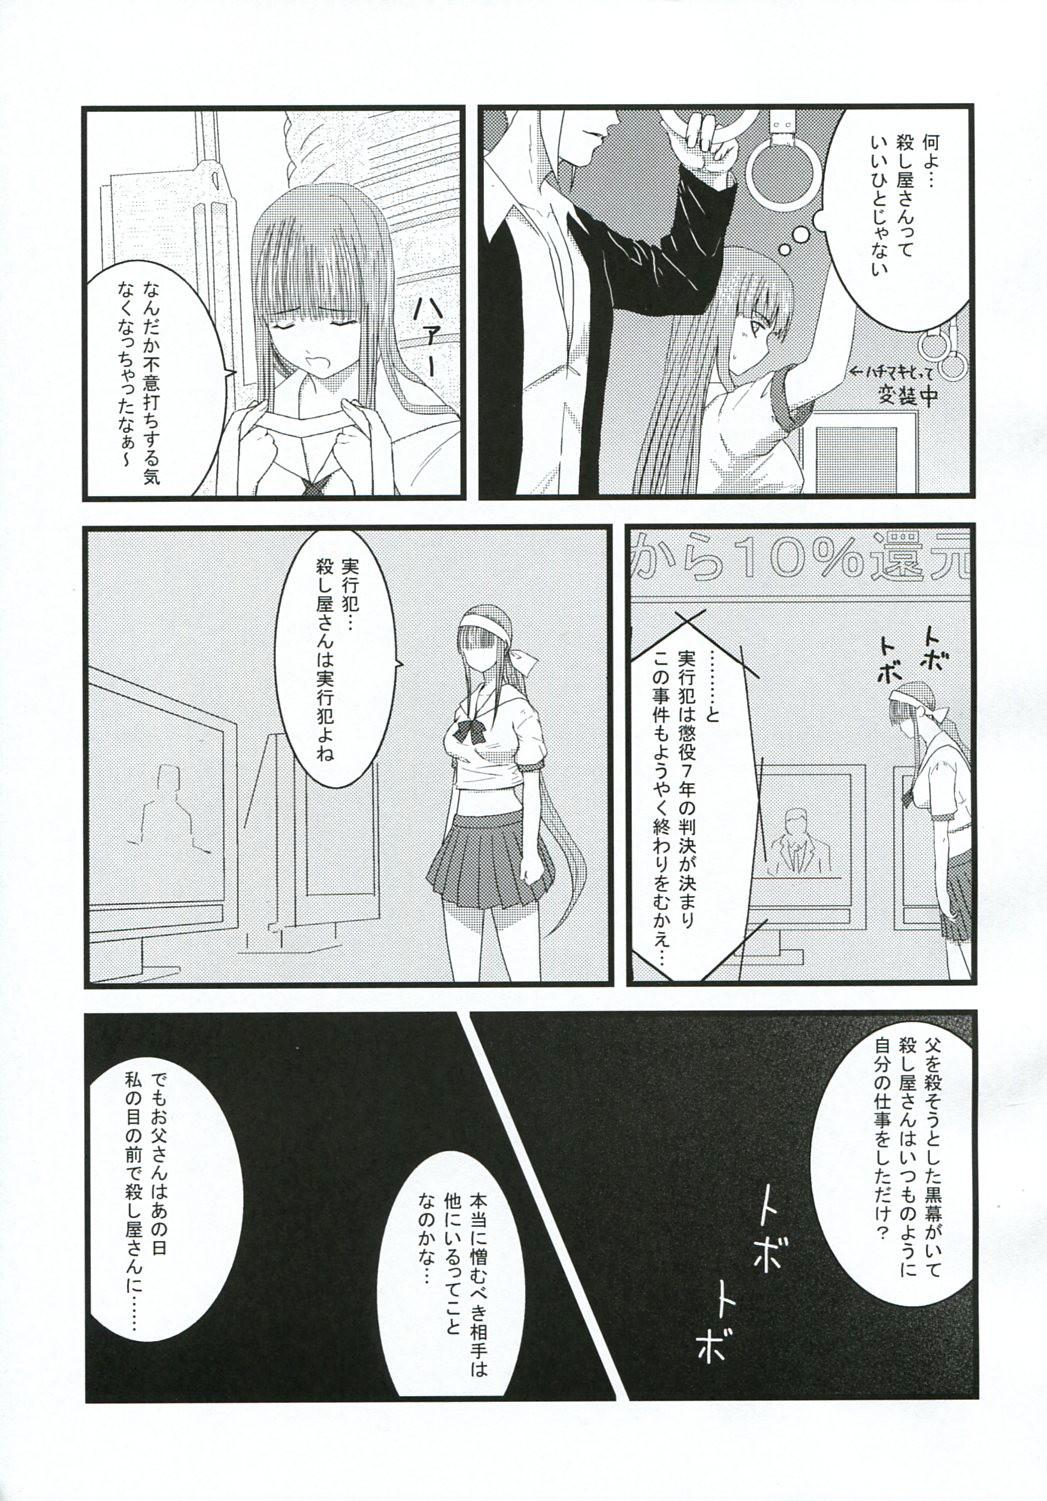 Busty Chichi no Kataki Onna san no Hon 2 Kanketsu hen...? - Koroshiya-san Vecina - Page 6